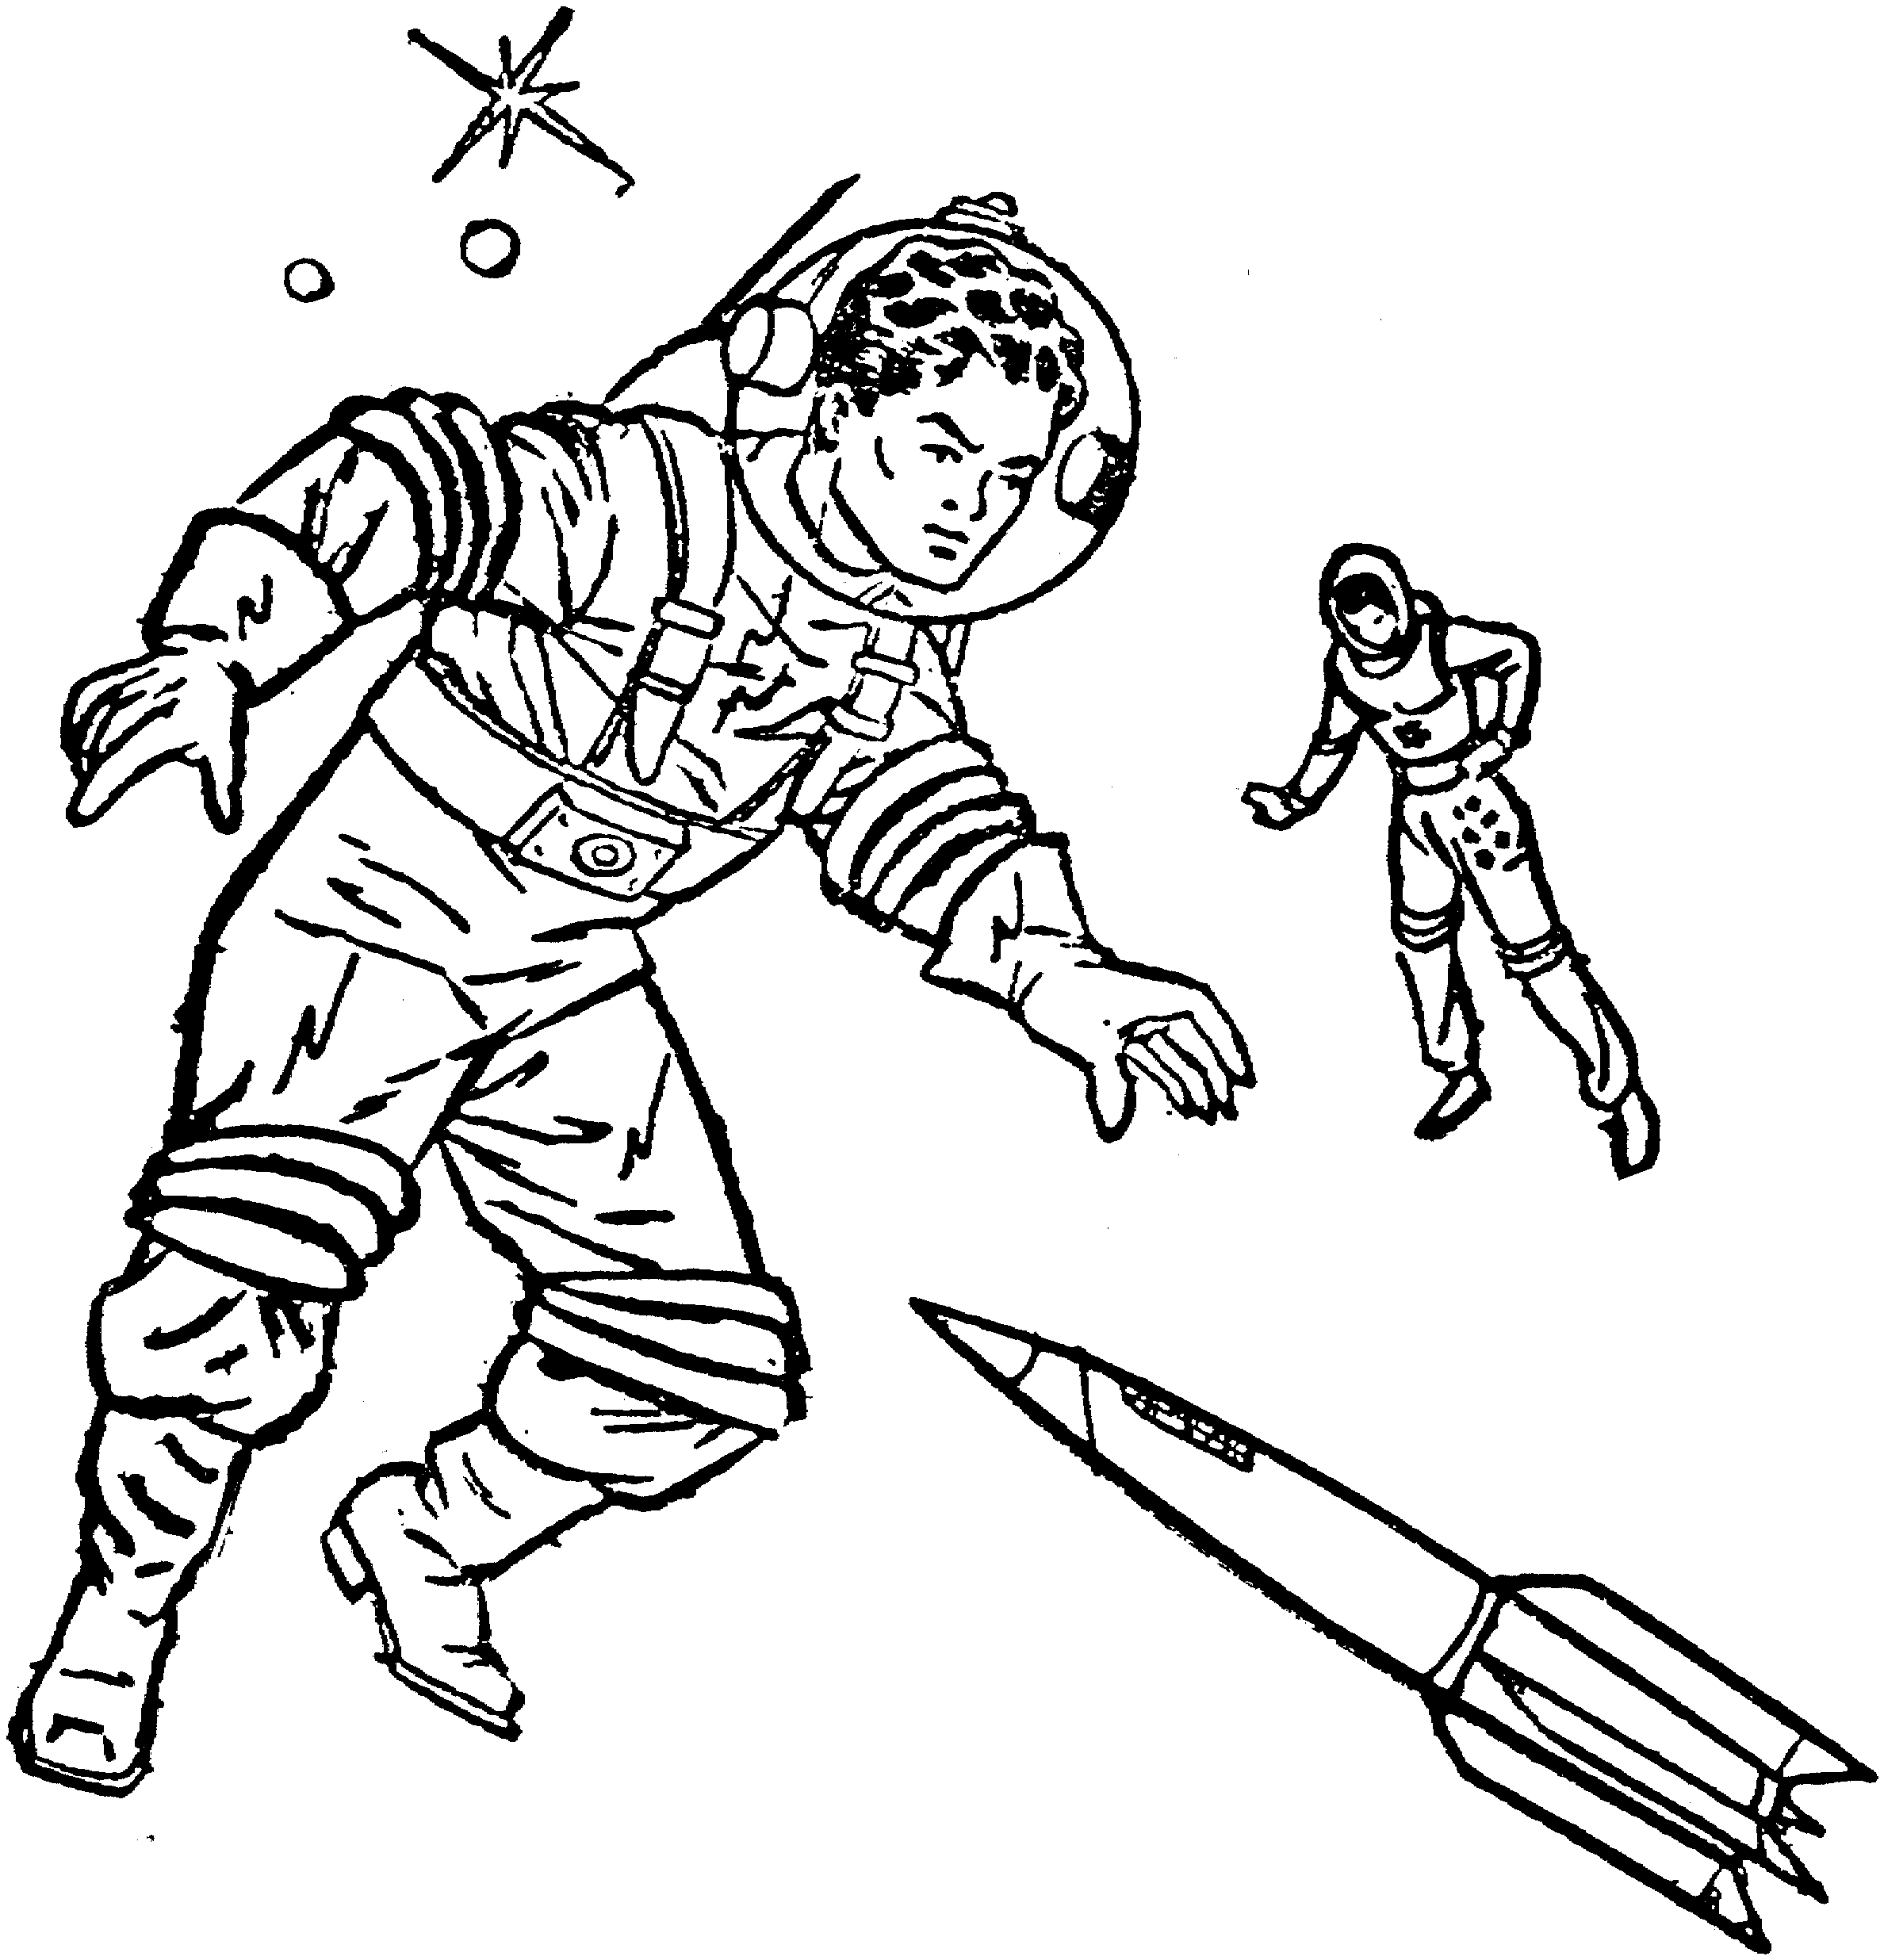 Астронавт и ракета из мультфильма "Астронавт"